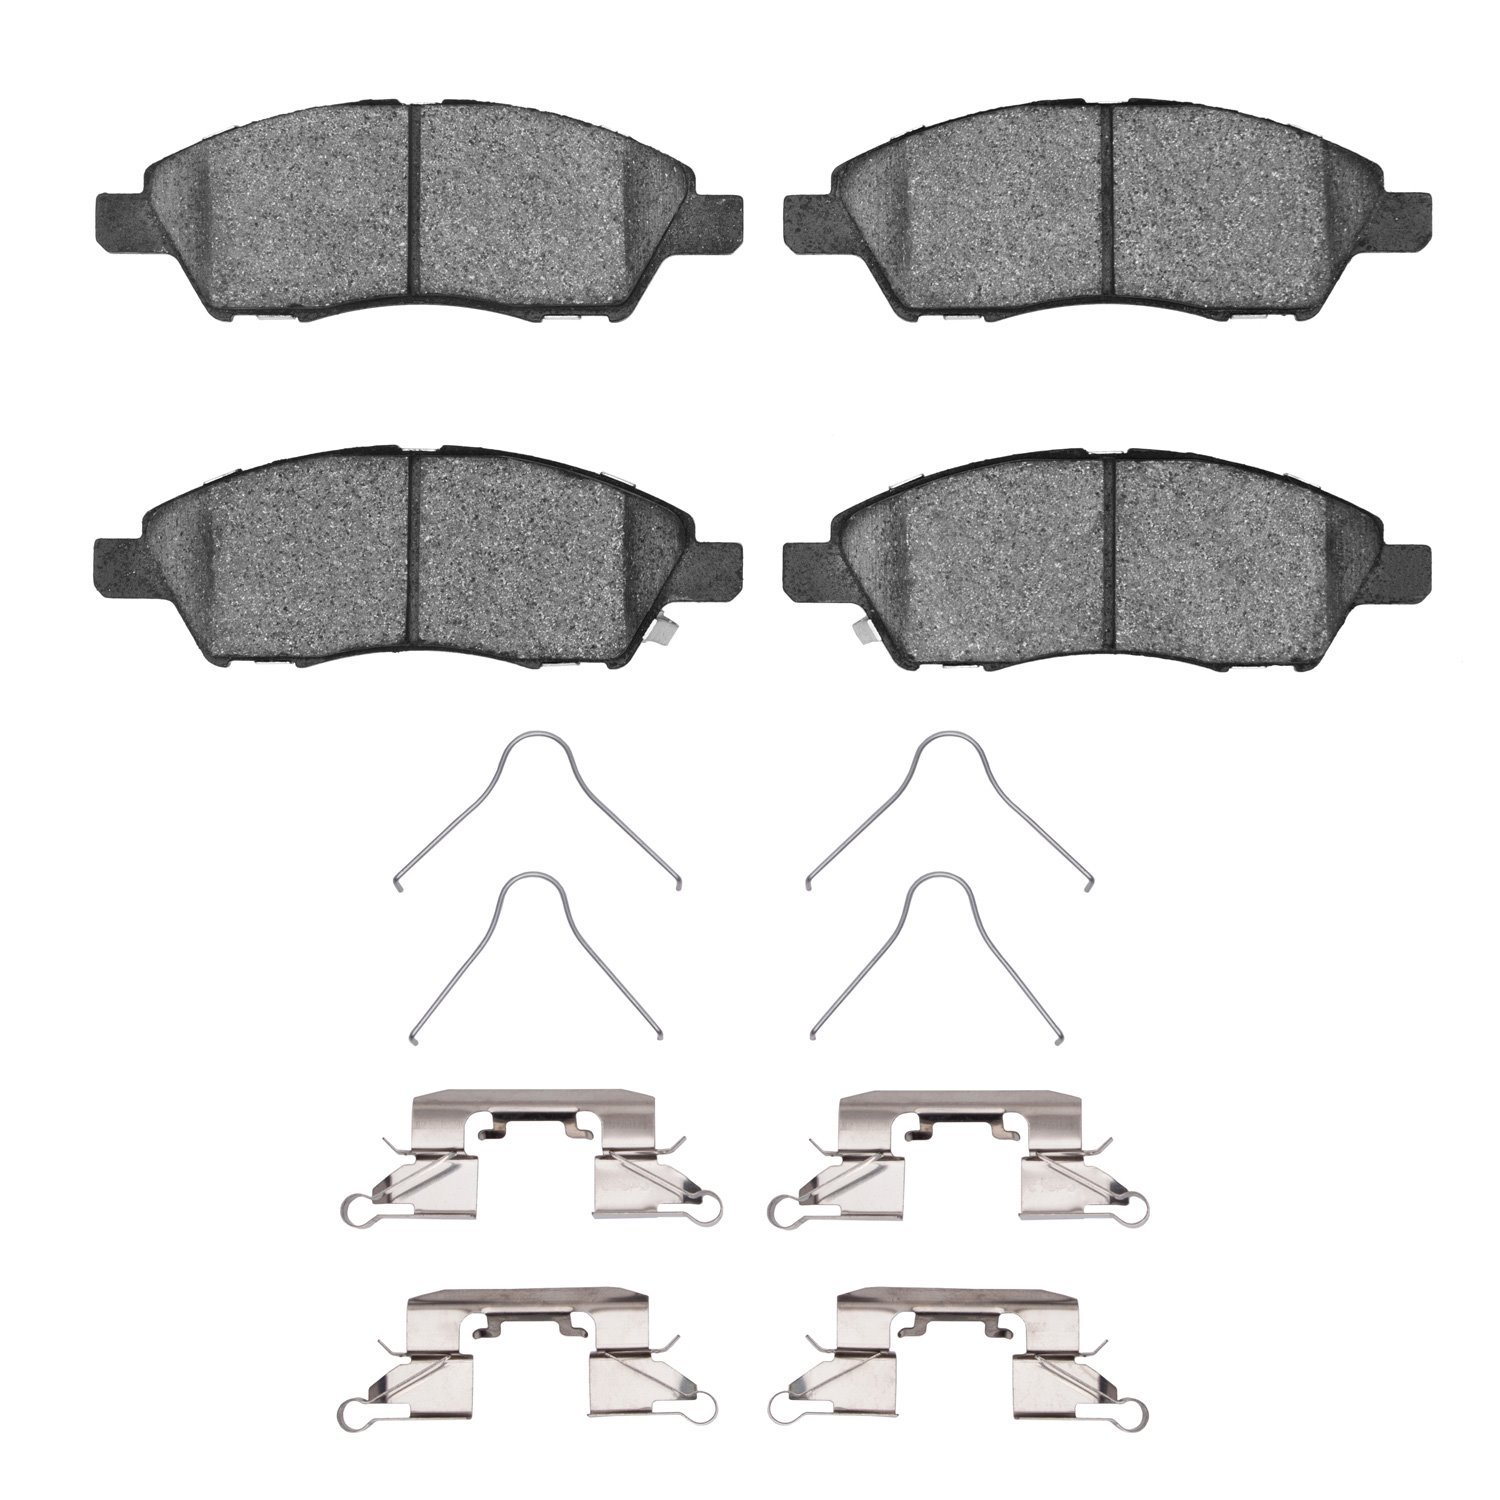 Ceramic Brake Pads & Hardware Kit, 2011-2019 Infiniti/Nissan, Position: Front